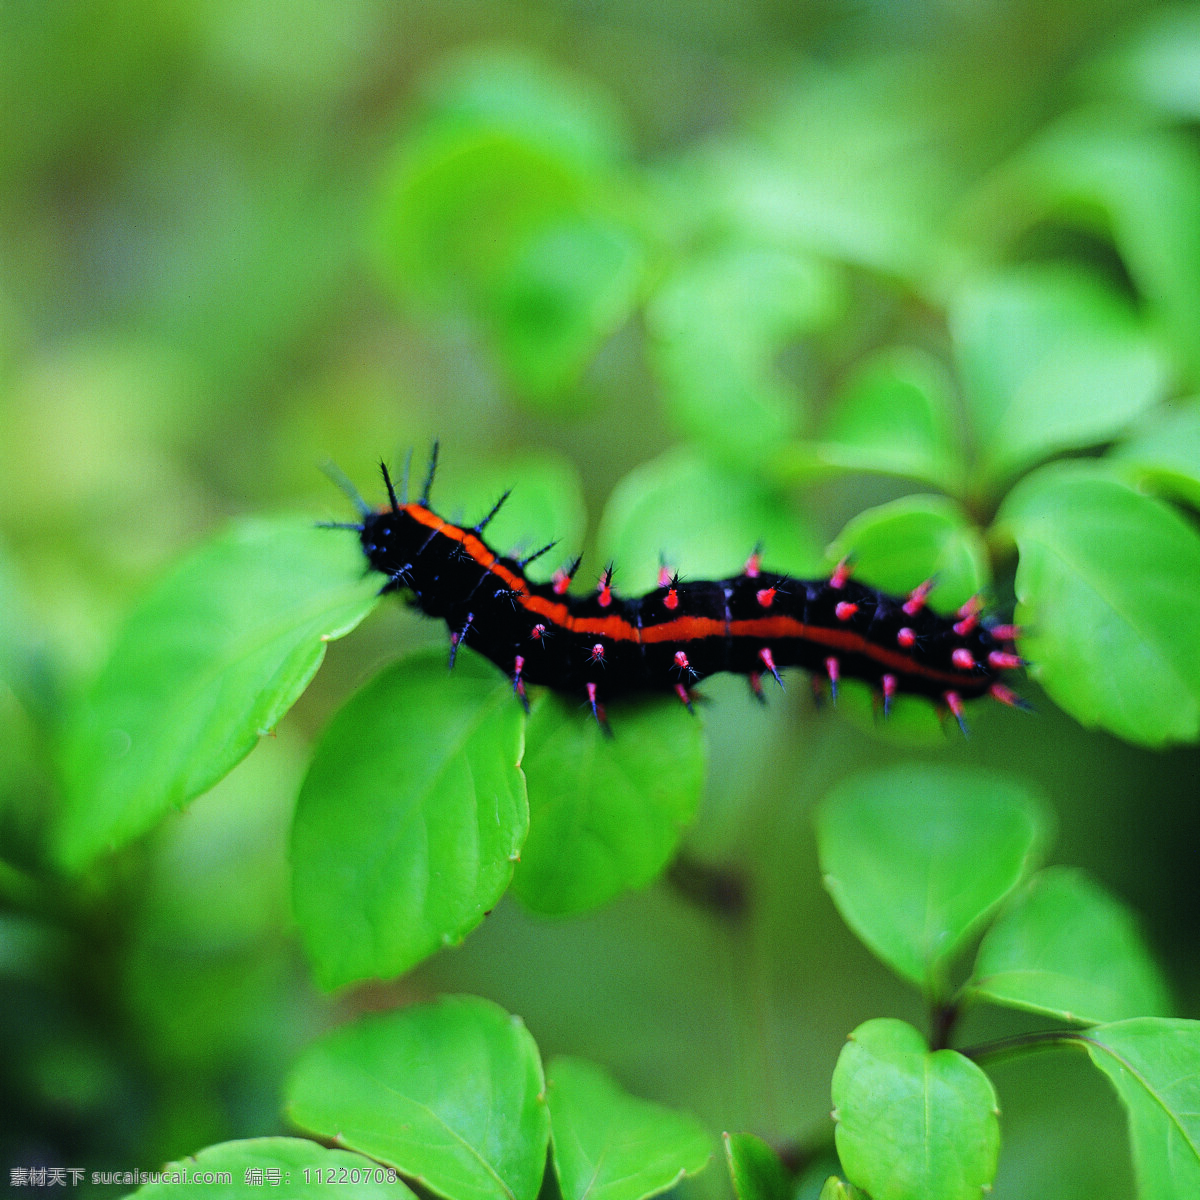 昆虫 物语 蝴蝶 昆虫物语 动物 植物 和谐 相处 生物世界